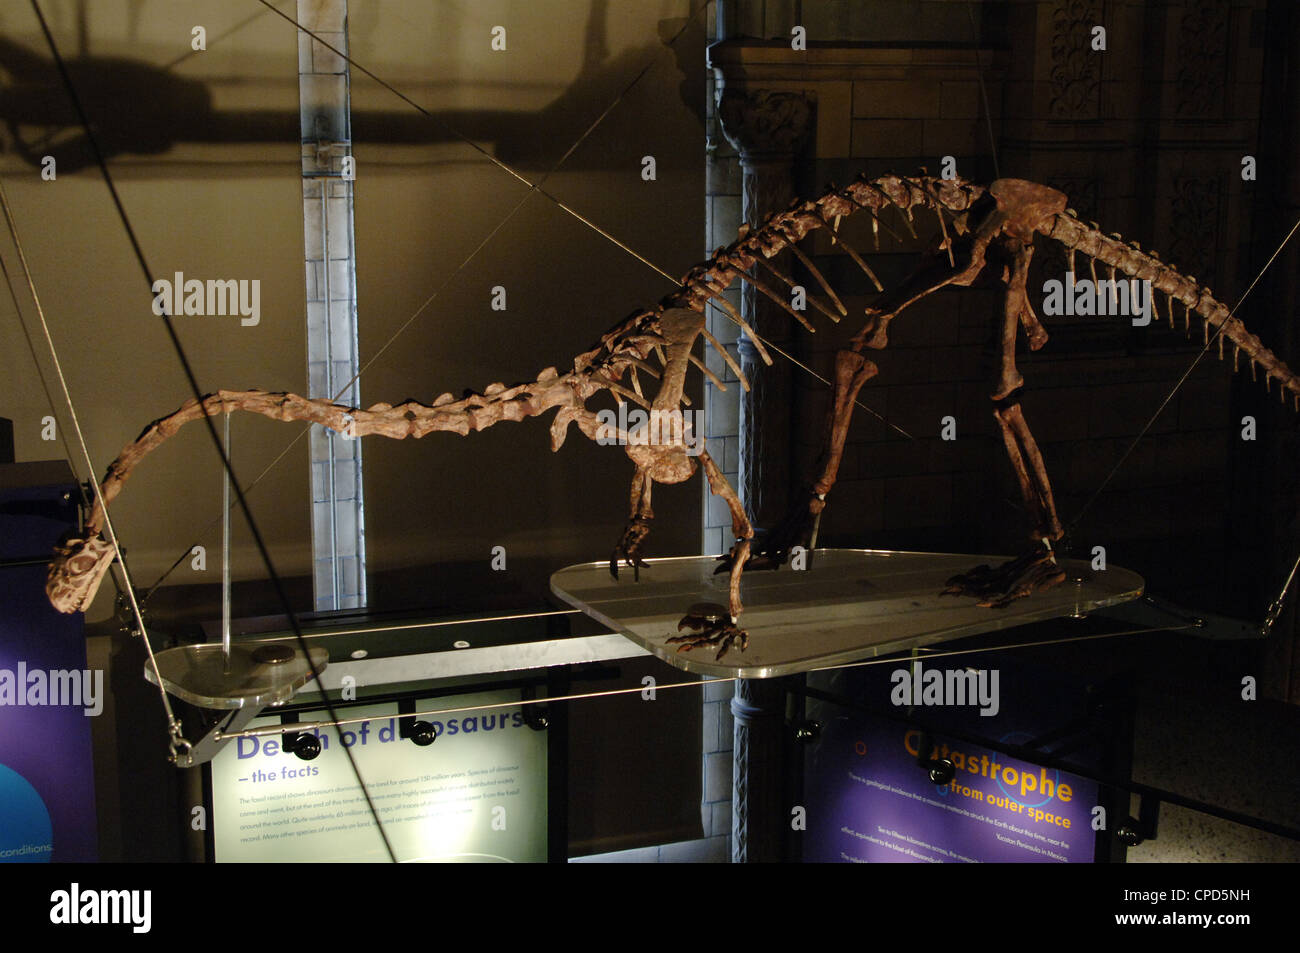 Massospondylus dinosaure. Début de période jurassique. À l'âge de l'Hettangien Pliensbachien. Il y a 200-183 millions d'années. Squelette. Banque D'Images